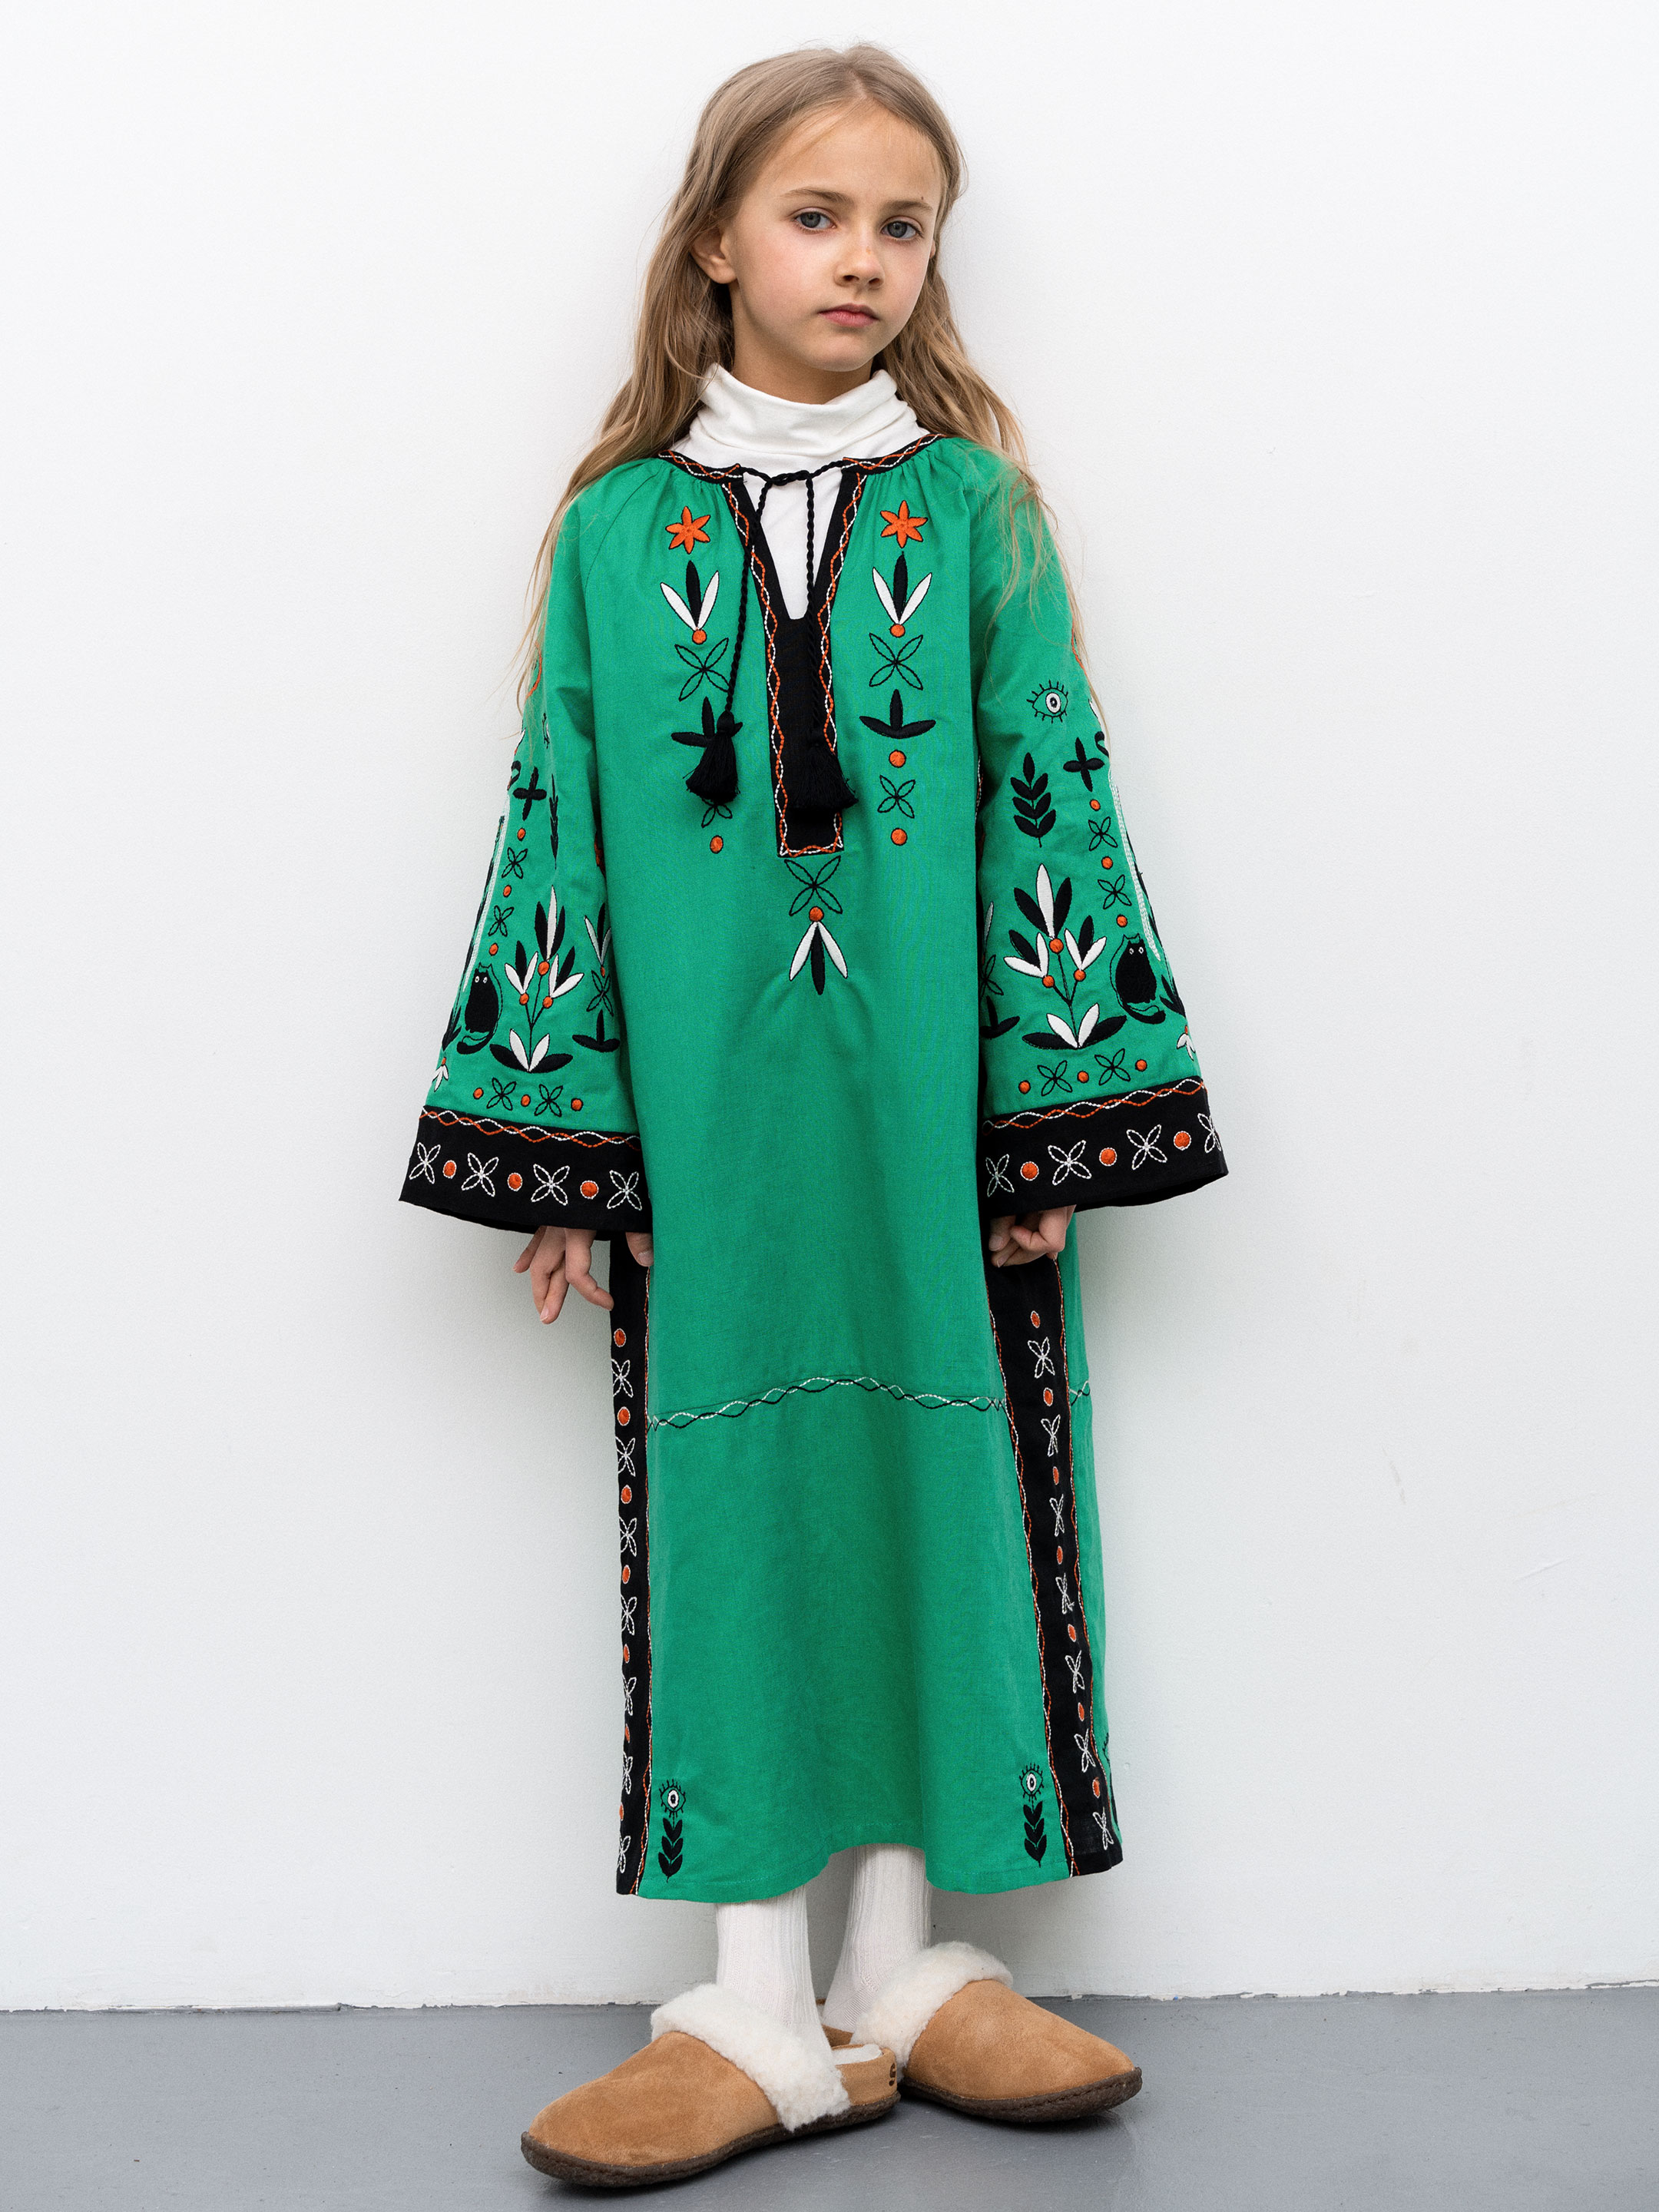 Дитяча сукня з вишивкою Divchyna Trostynka - фото 1